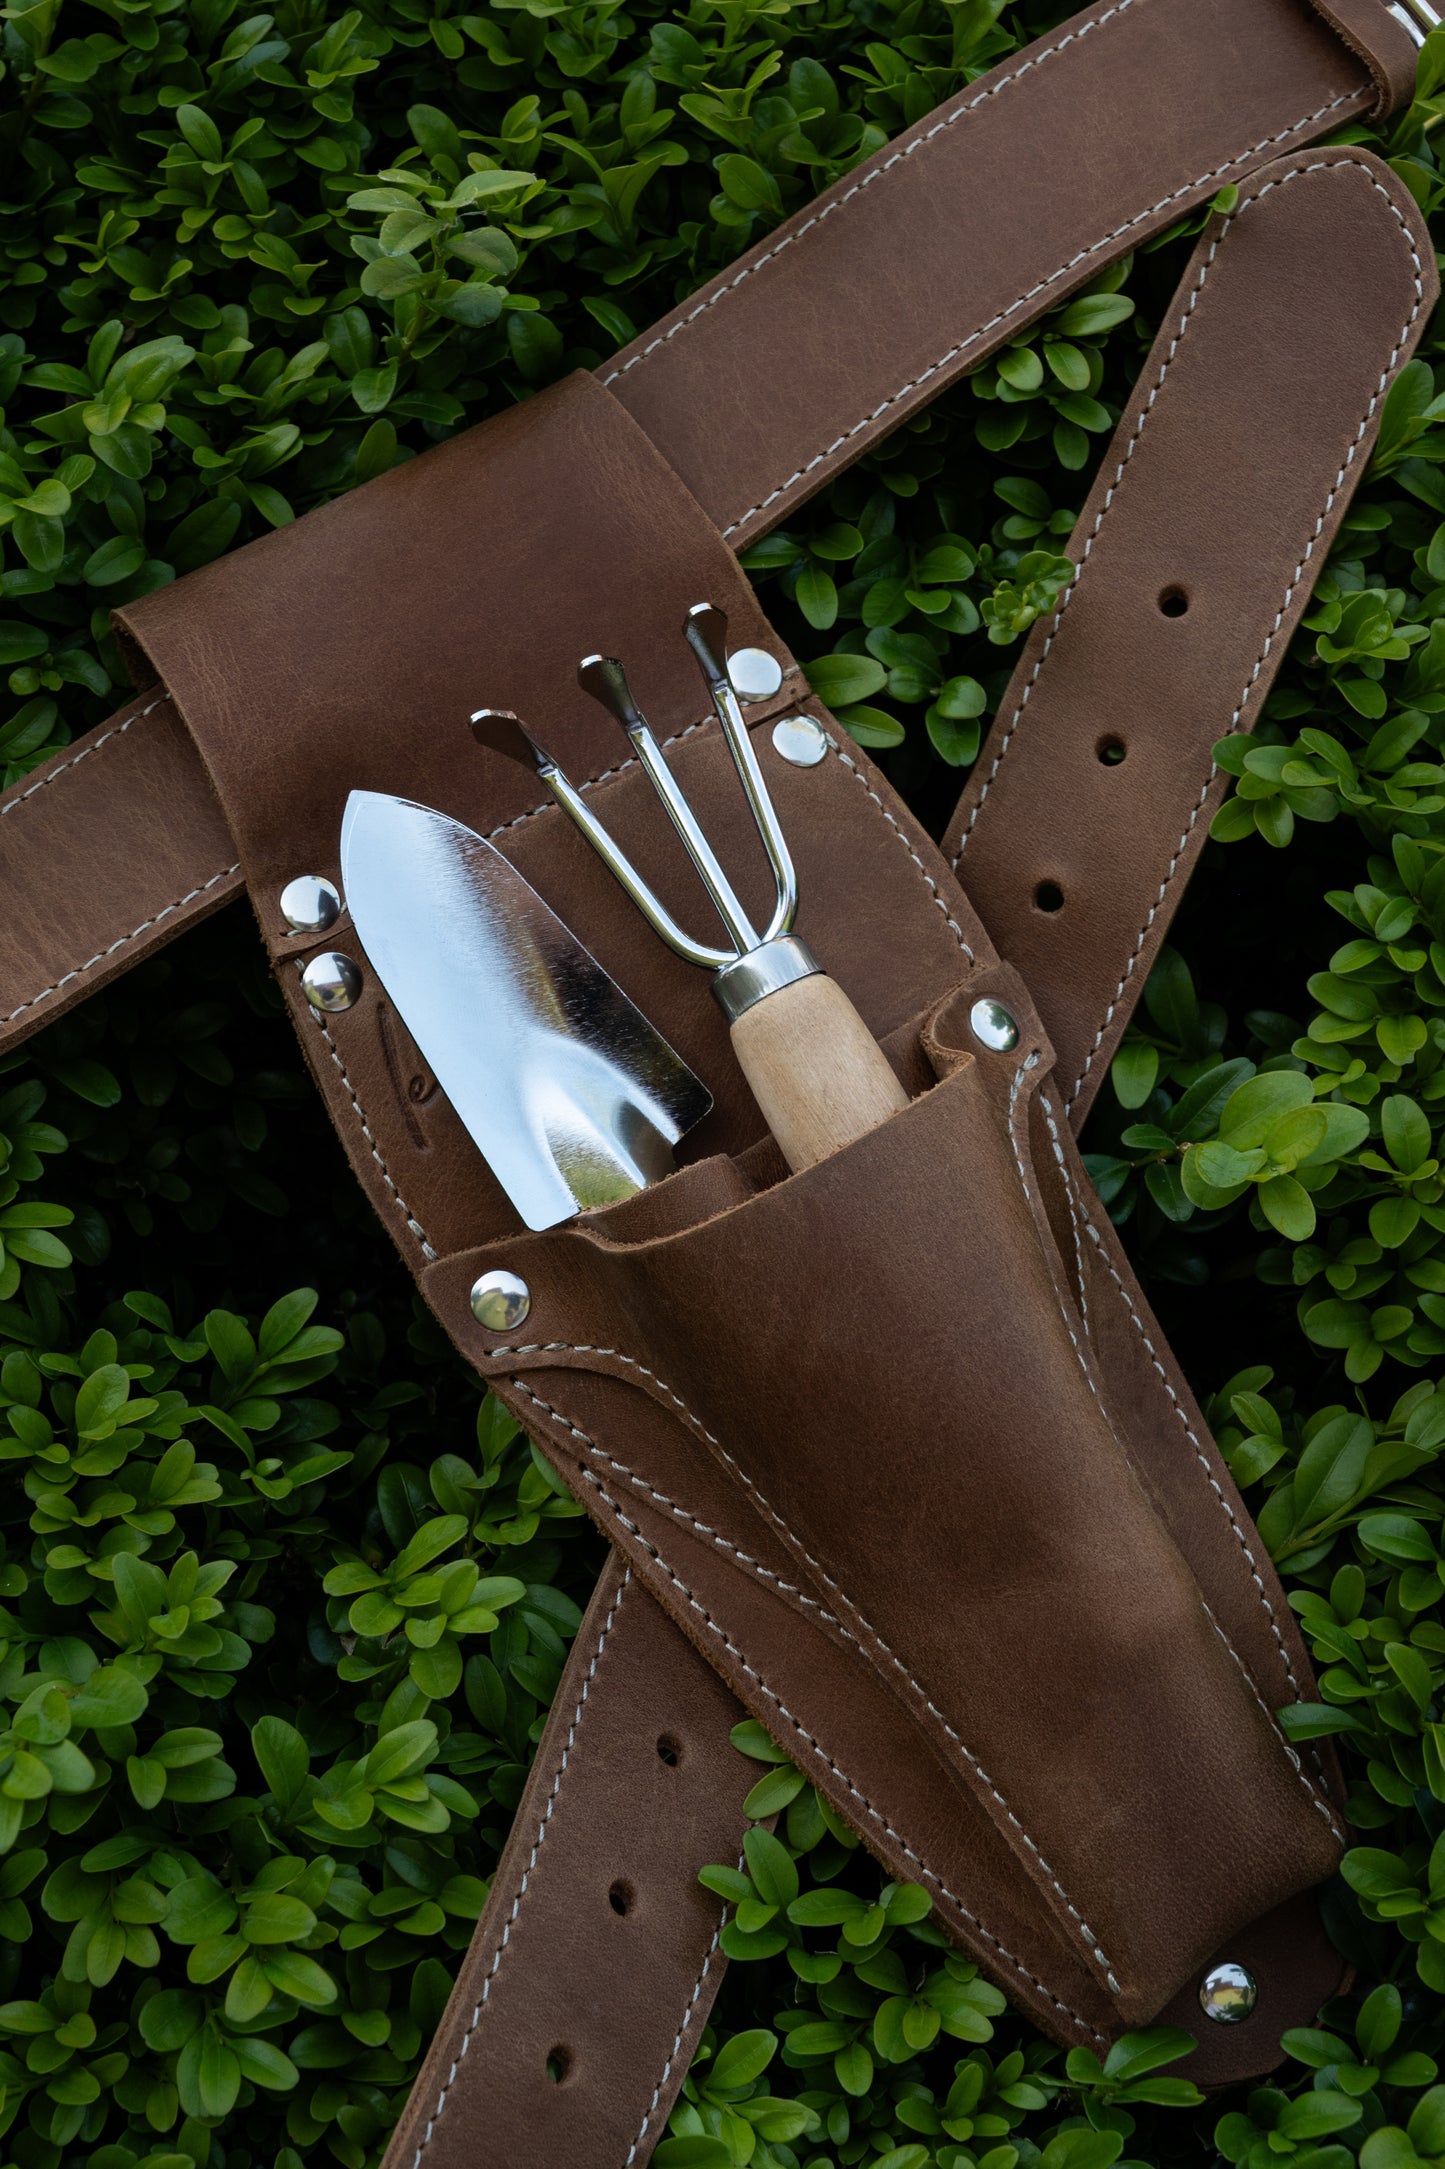 Hori Hori Leather Garden tool apron.